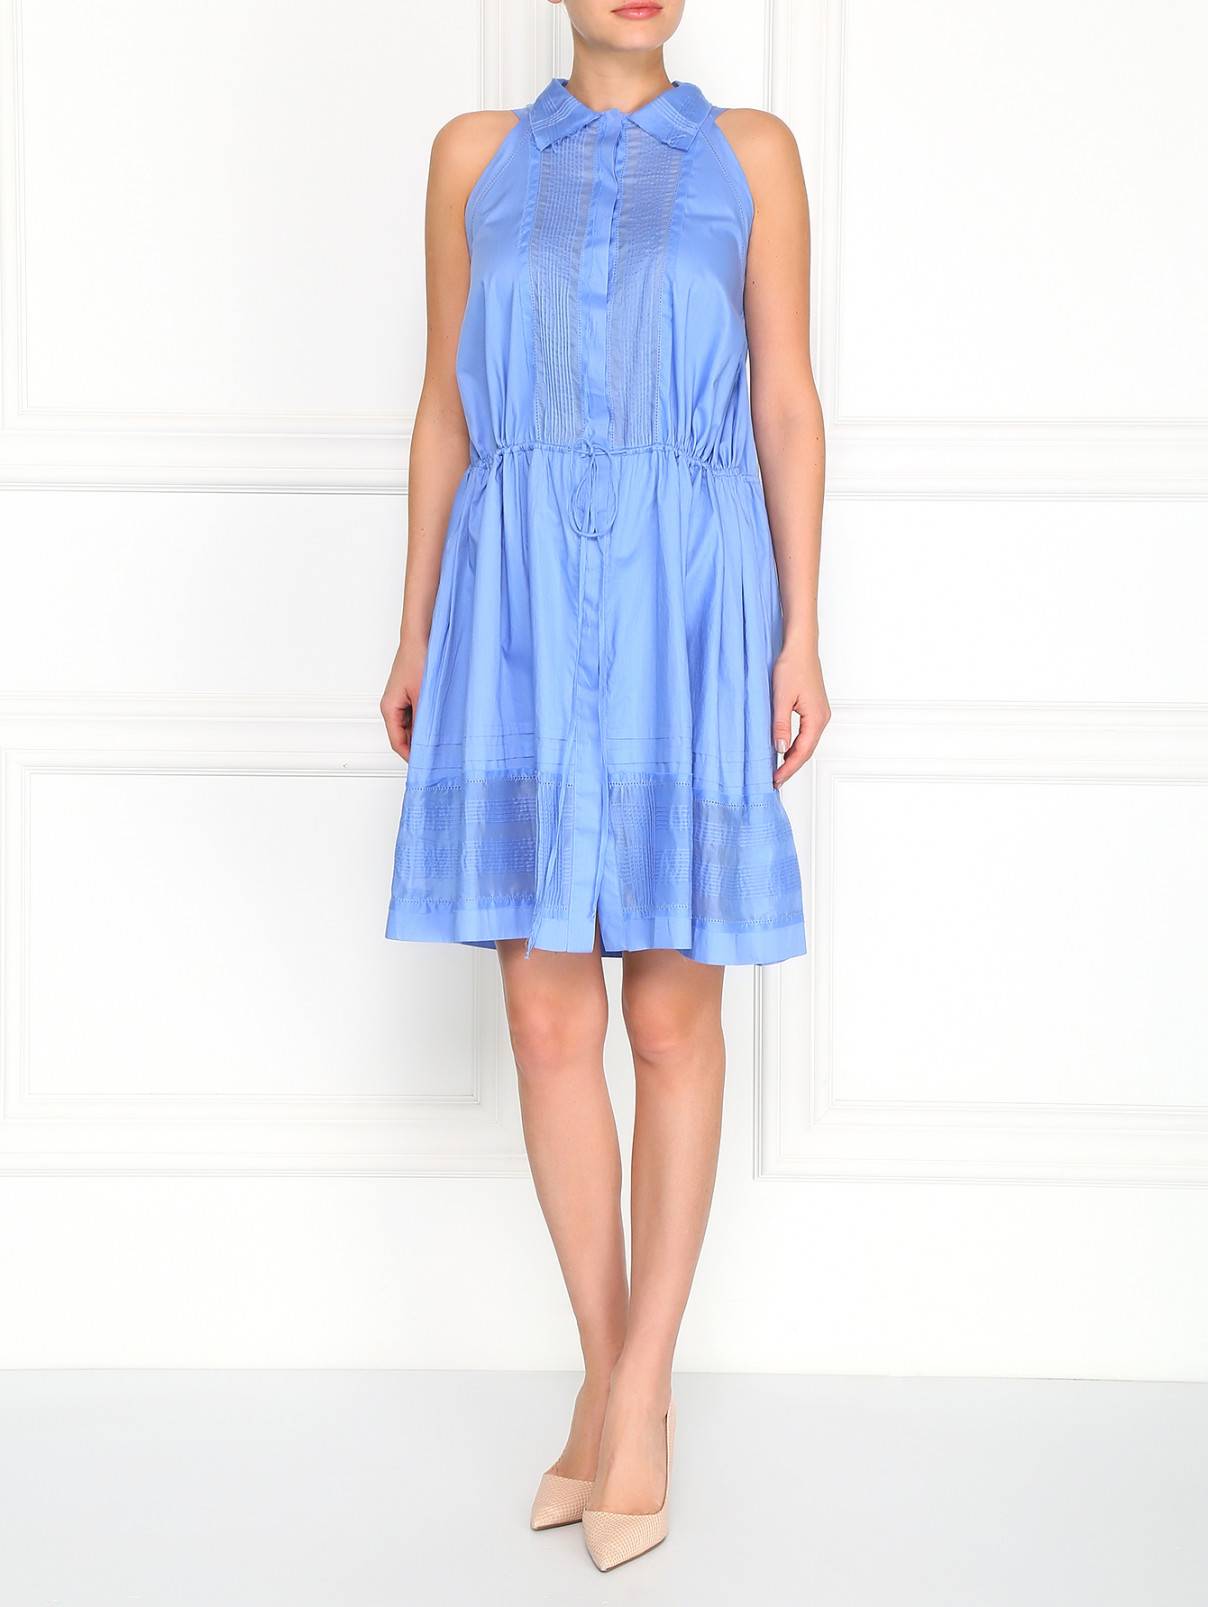 Платье из хлопка с фактурными элементами Ermanno Scervino  –  Модель Общий вид  – Цвет:  Синий